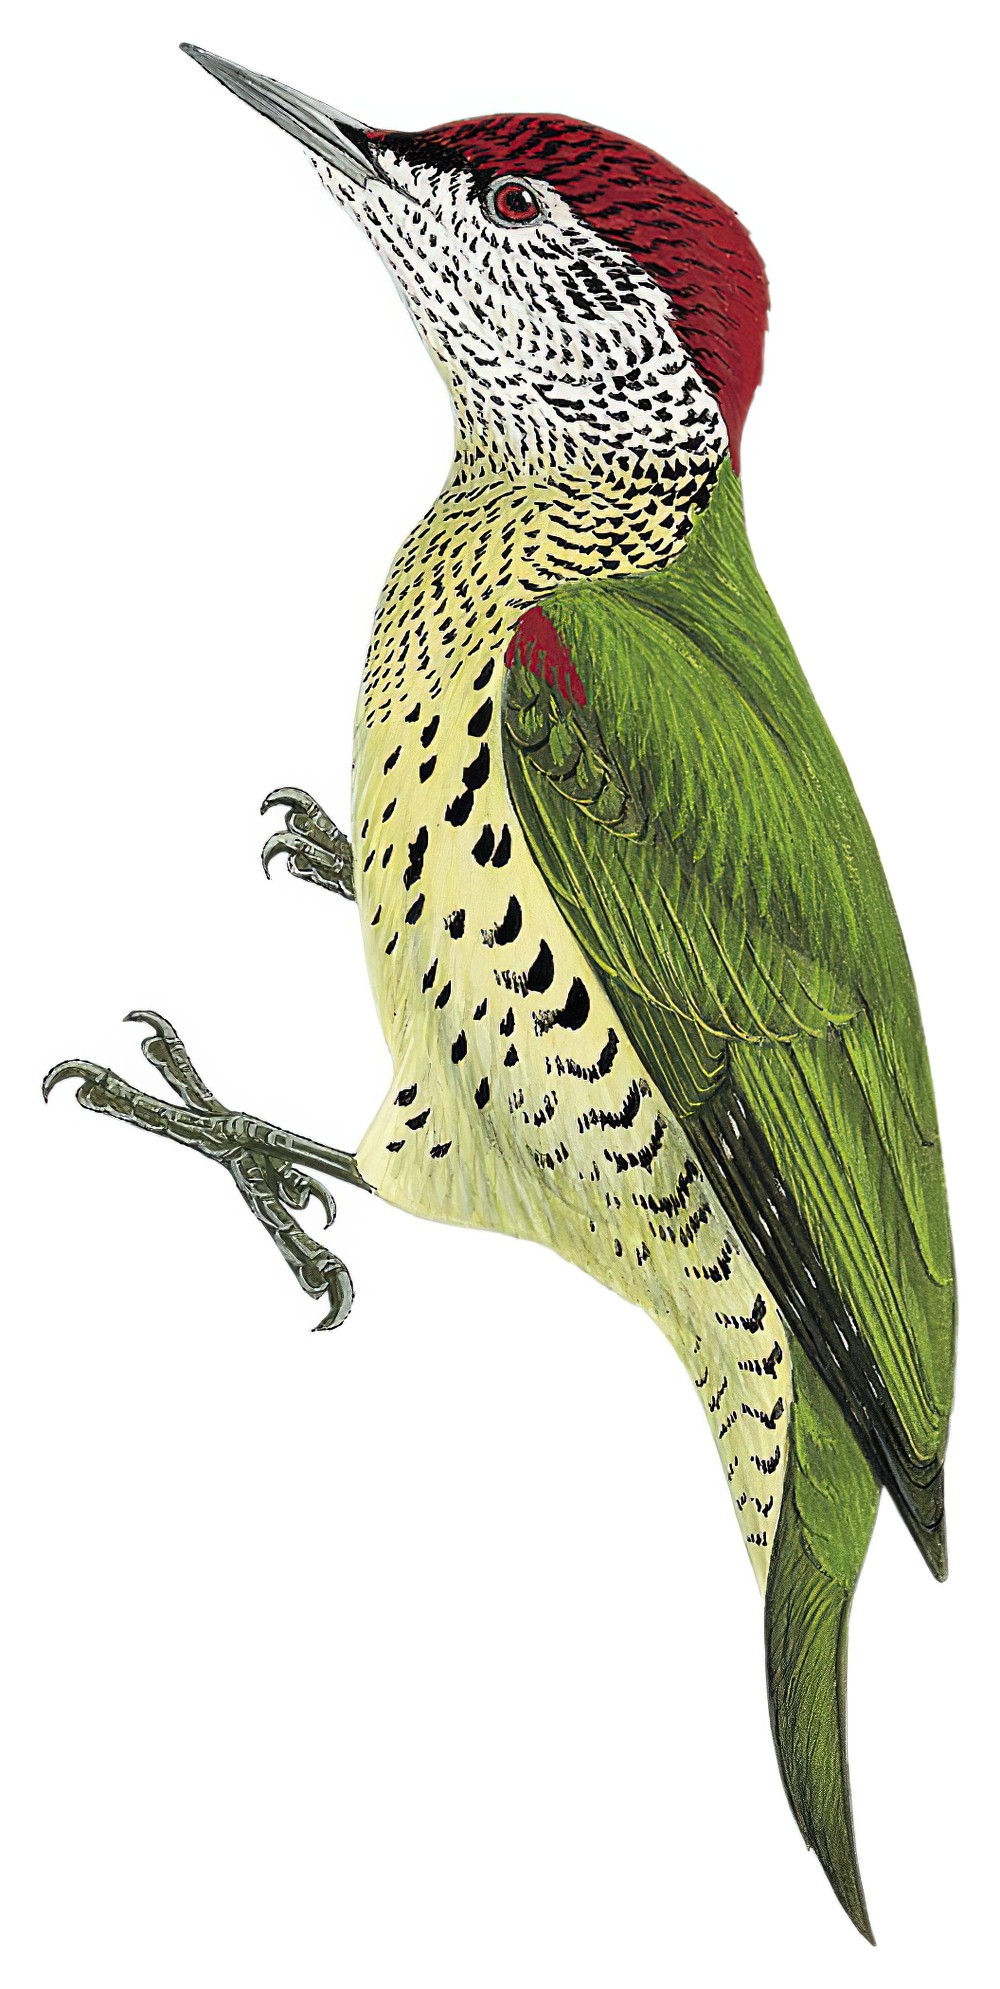 喀麦隆啄木鸟 / Tullberg's Woodpecker / Campethera tullbergi